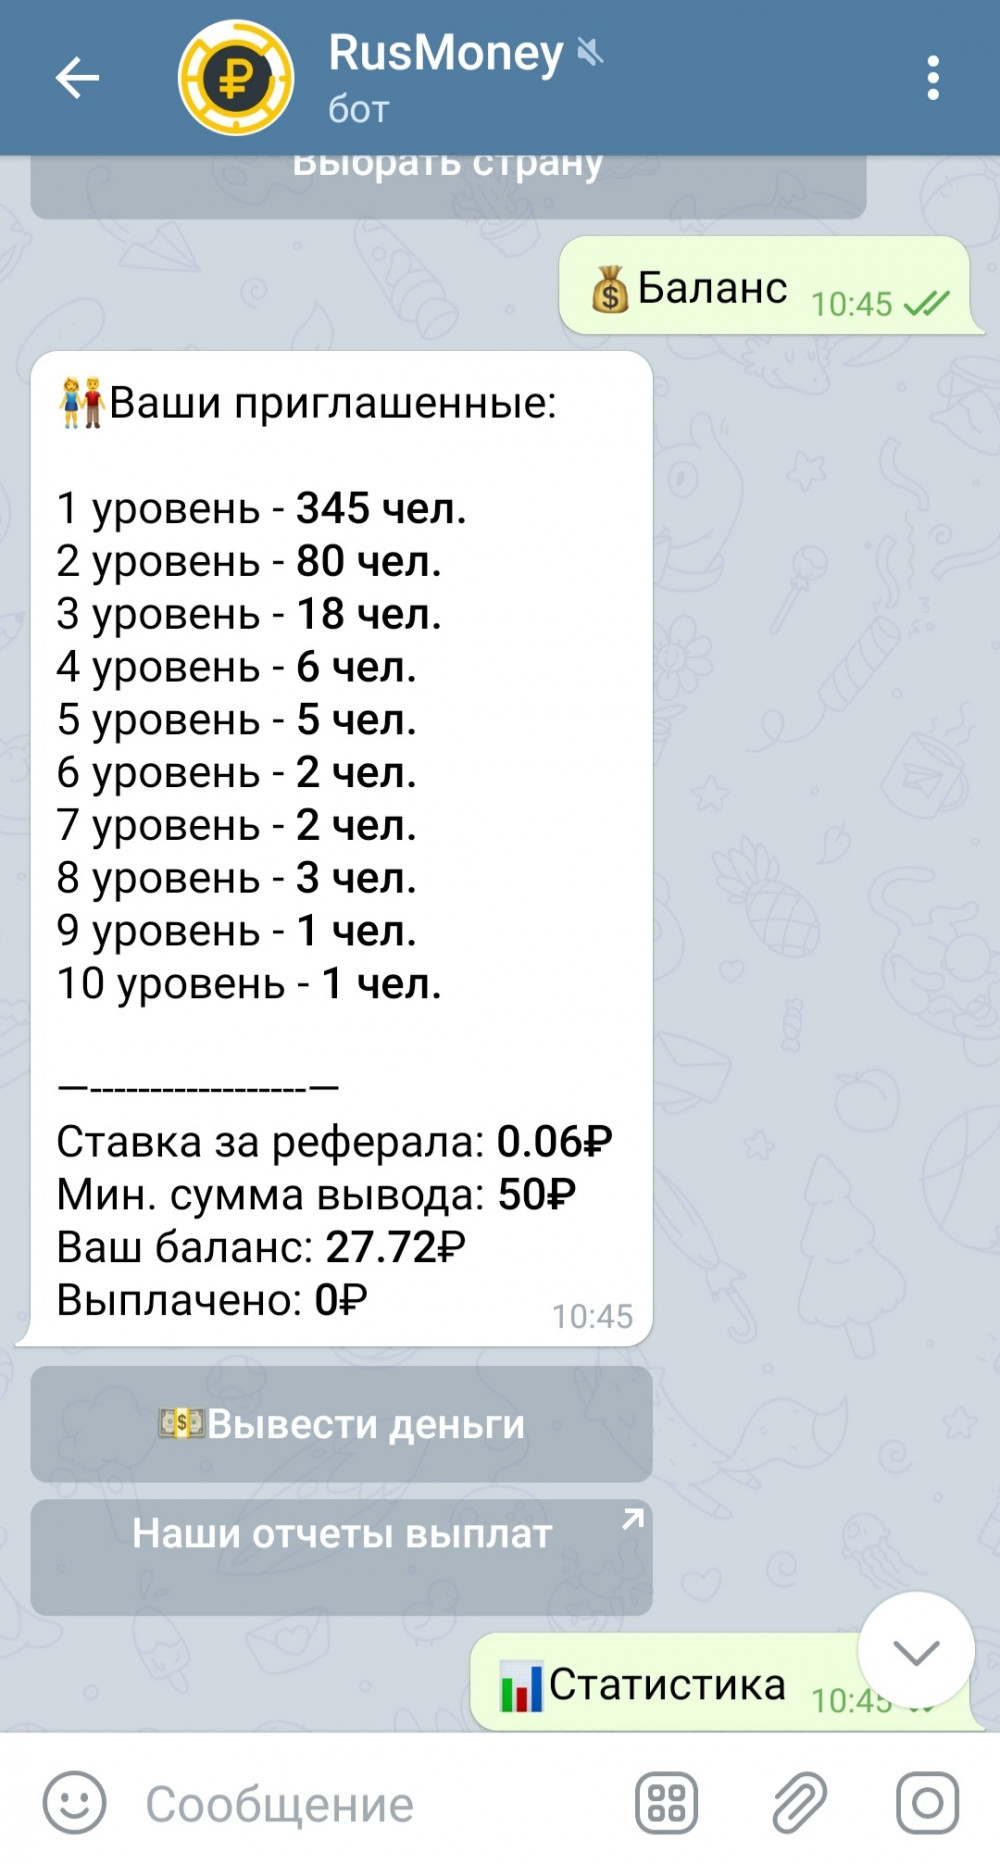 Заработок в телеграмме на русском без вложений с выводом денег карту сбербанка фото 112